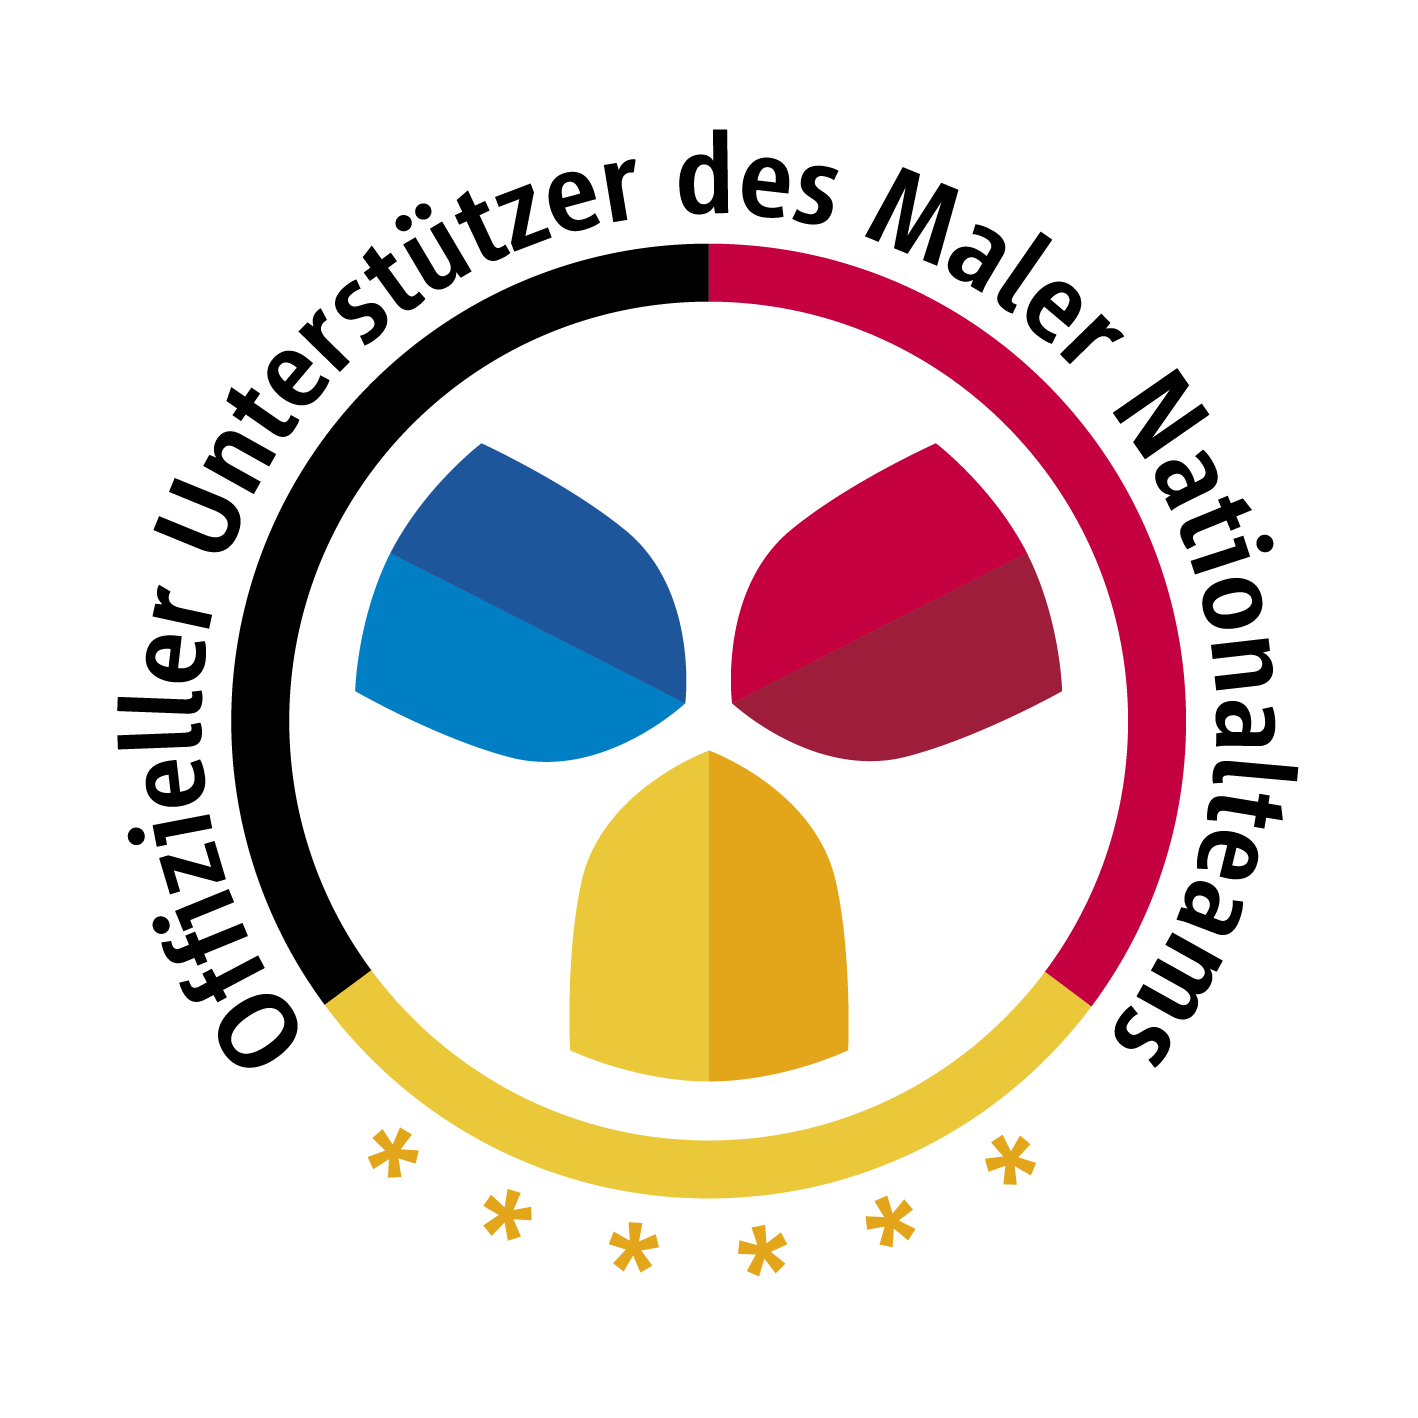 Hier wird das Logo des Malernationalteams gezeigt